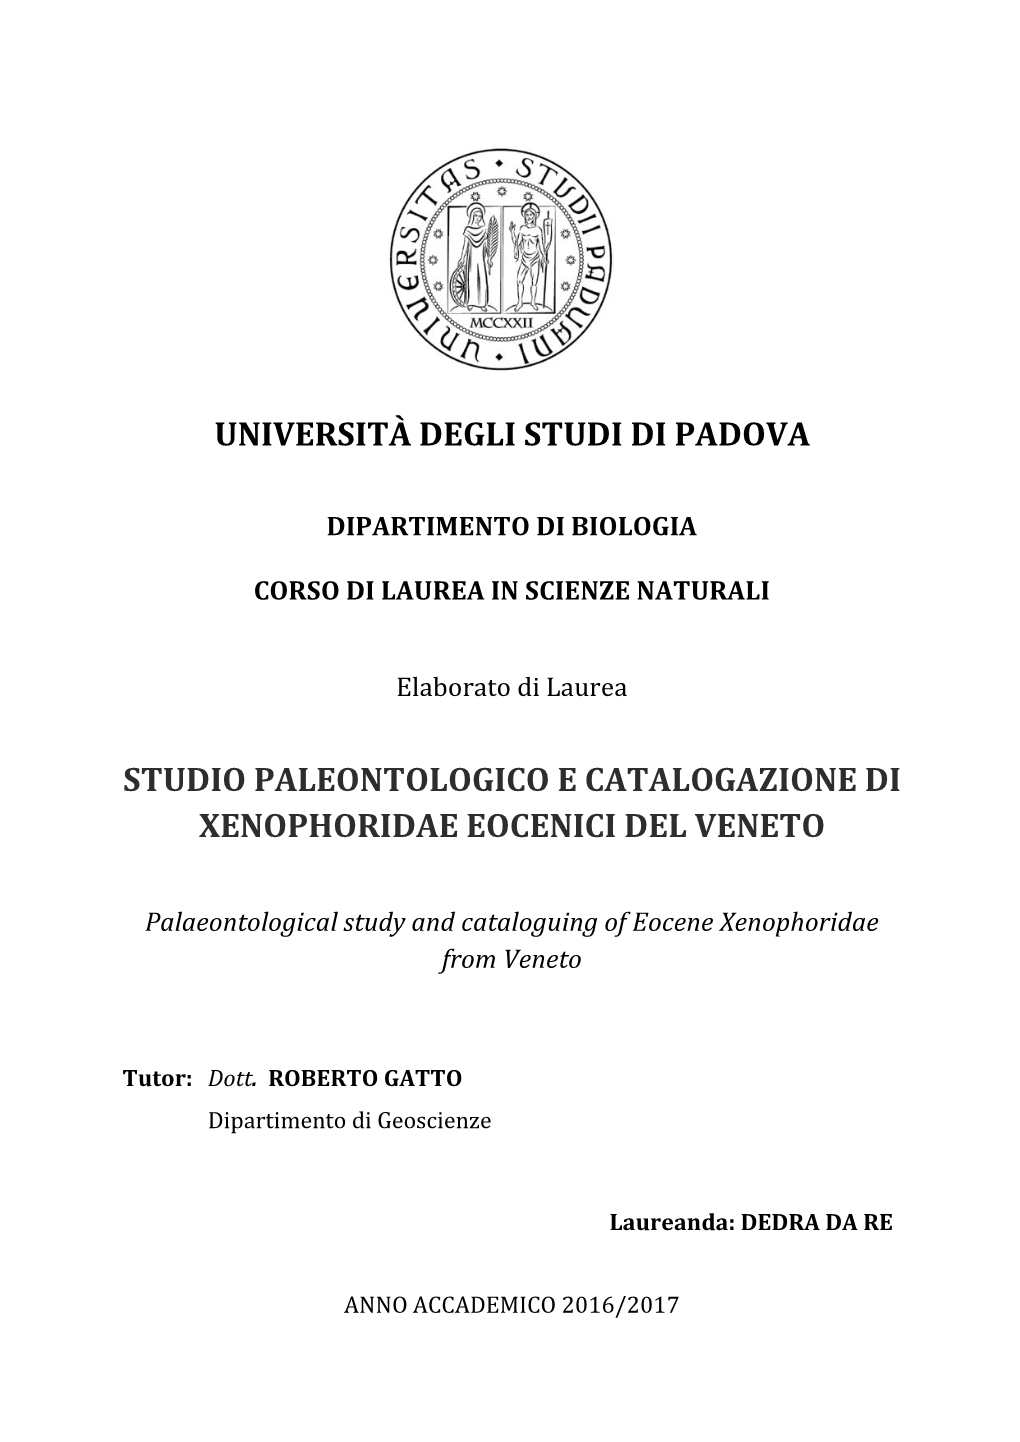 Studio Paleontologico E Catalogazione Di Xenophoridae Eocenici Del Veneto